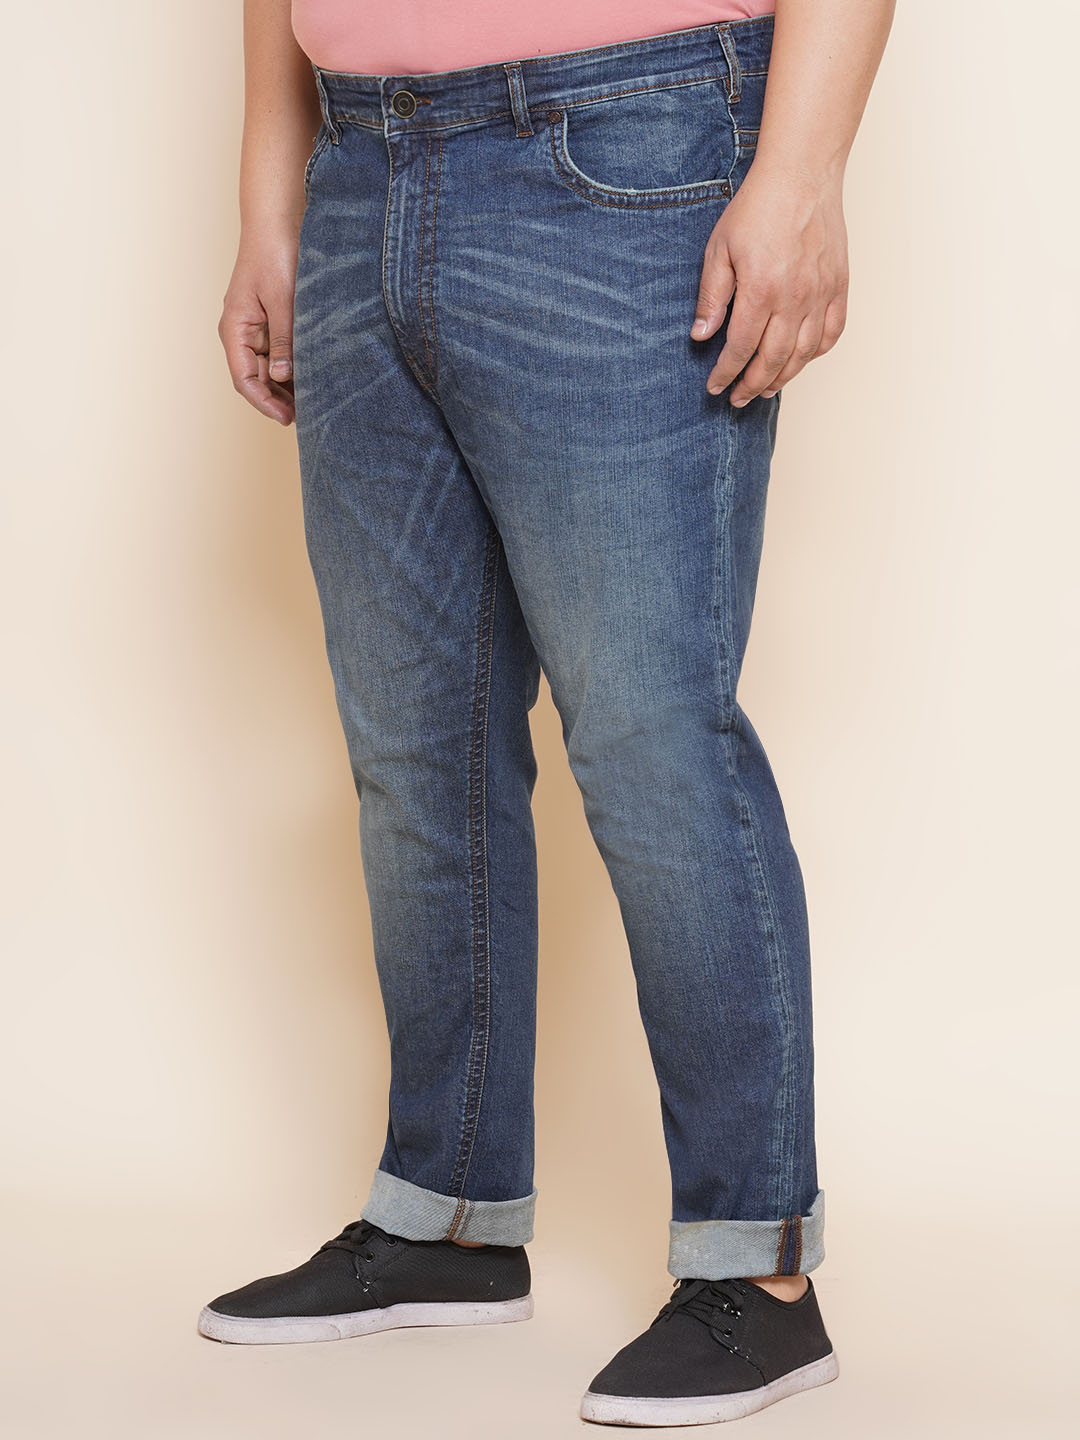 bottomwear/jeans/JPJ27019/jpj27019-4.jpg